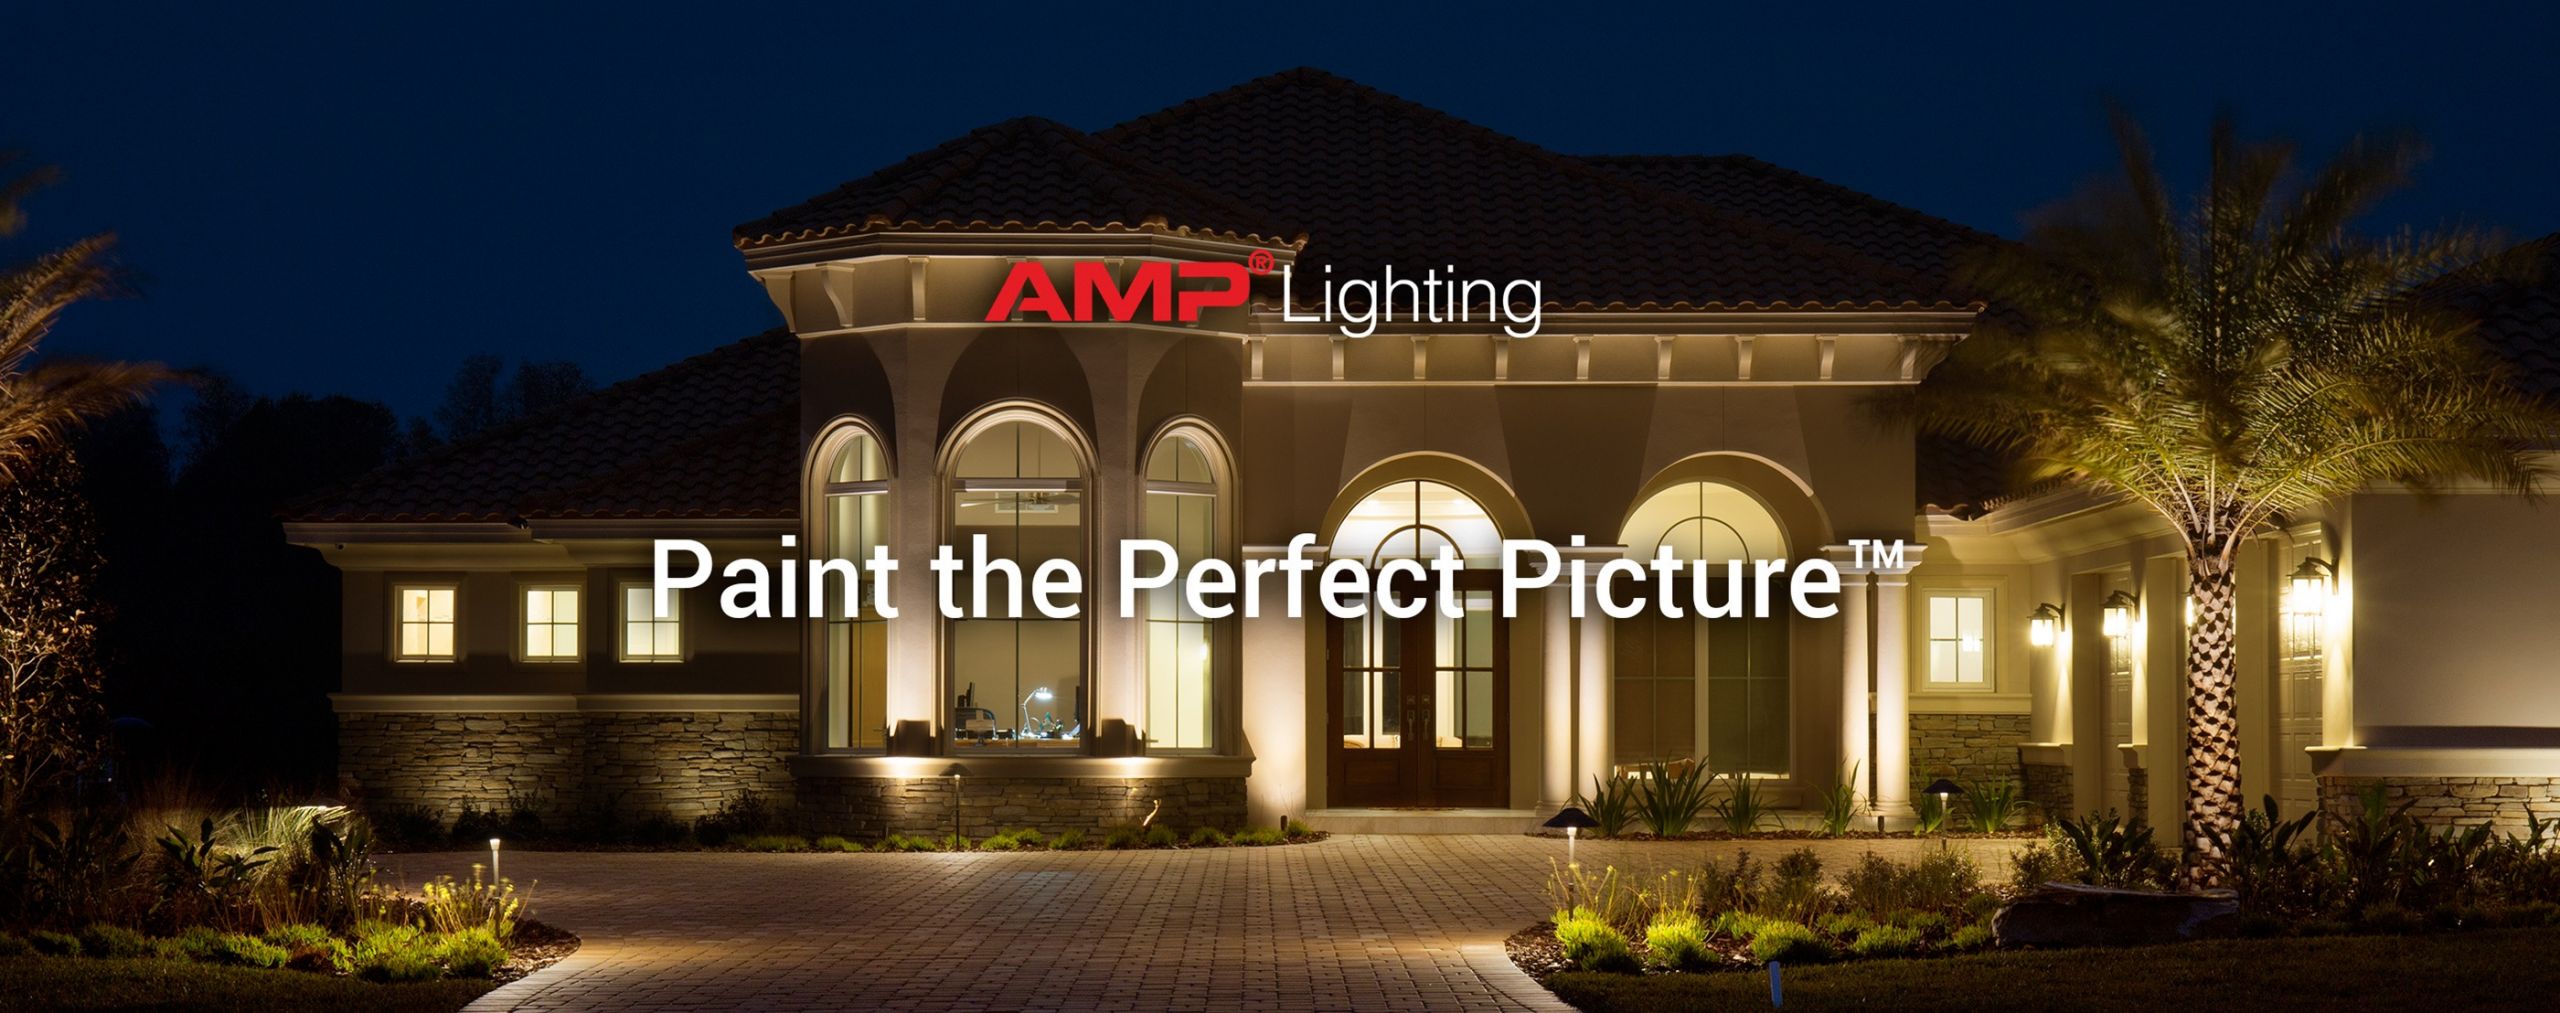 Pro Landscape Lighting
 Professional Landscape Lighting by AMP AMP Lighting